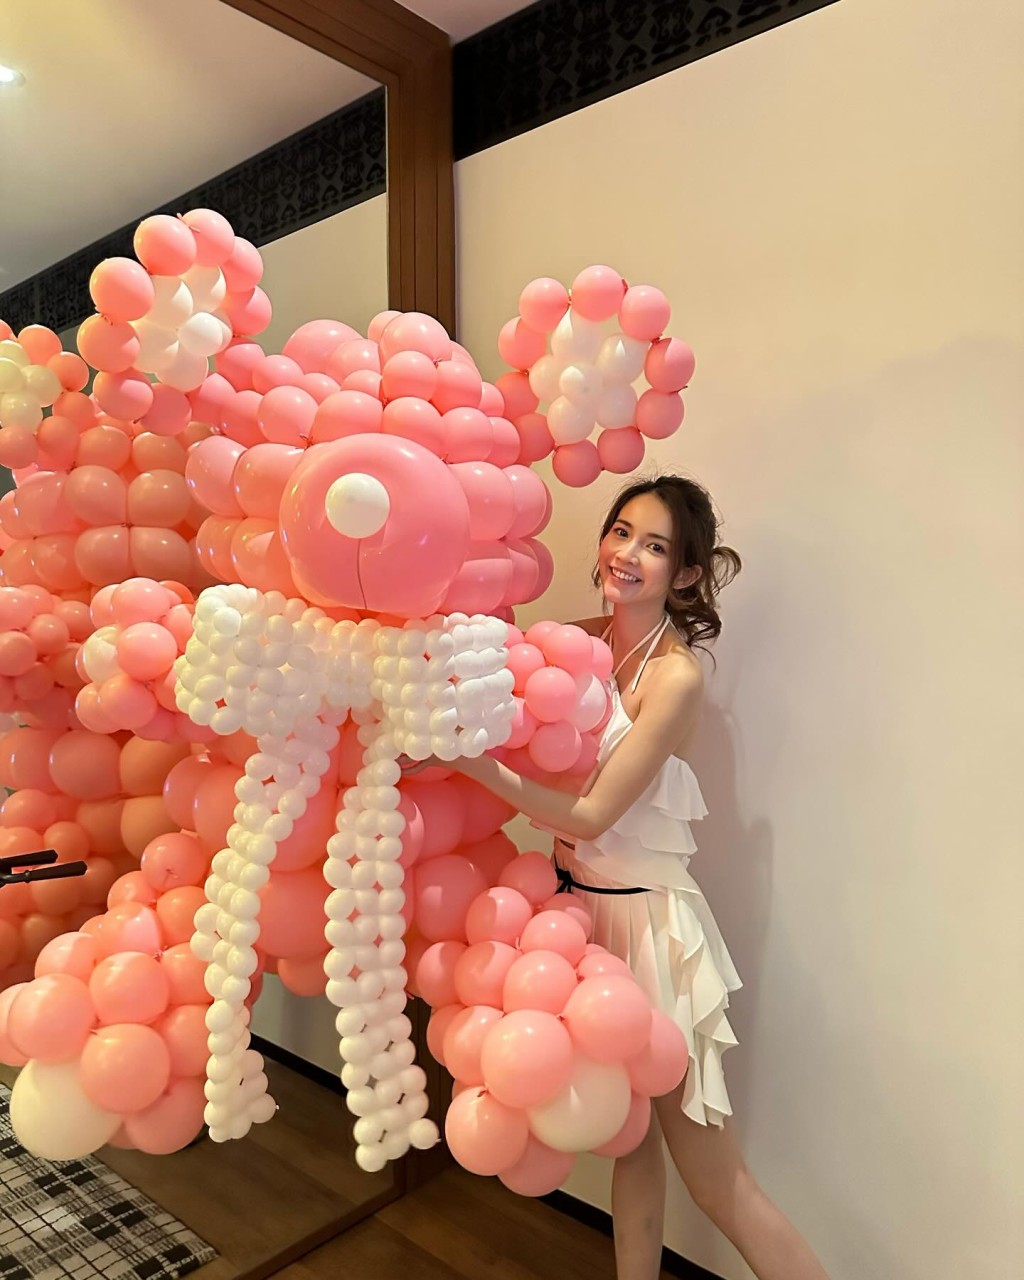 寿星女打扮性感，身穿吊带露背top及短裙的她兴奋地拿起约1米高的粉红气球熊仔。